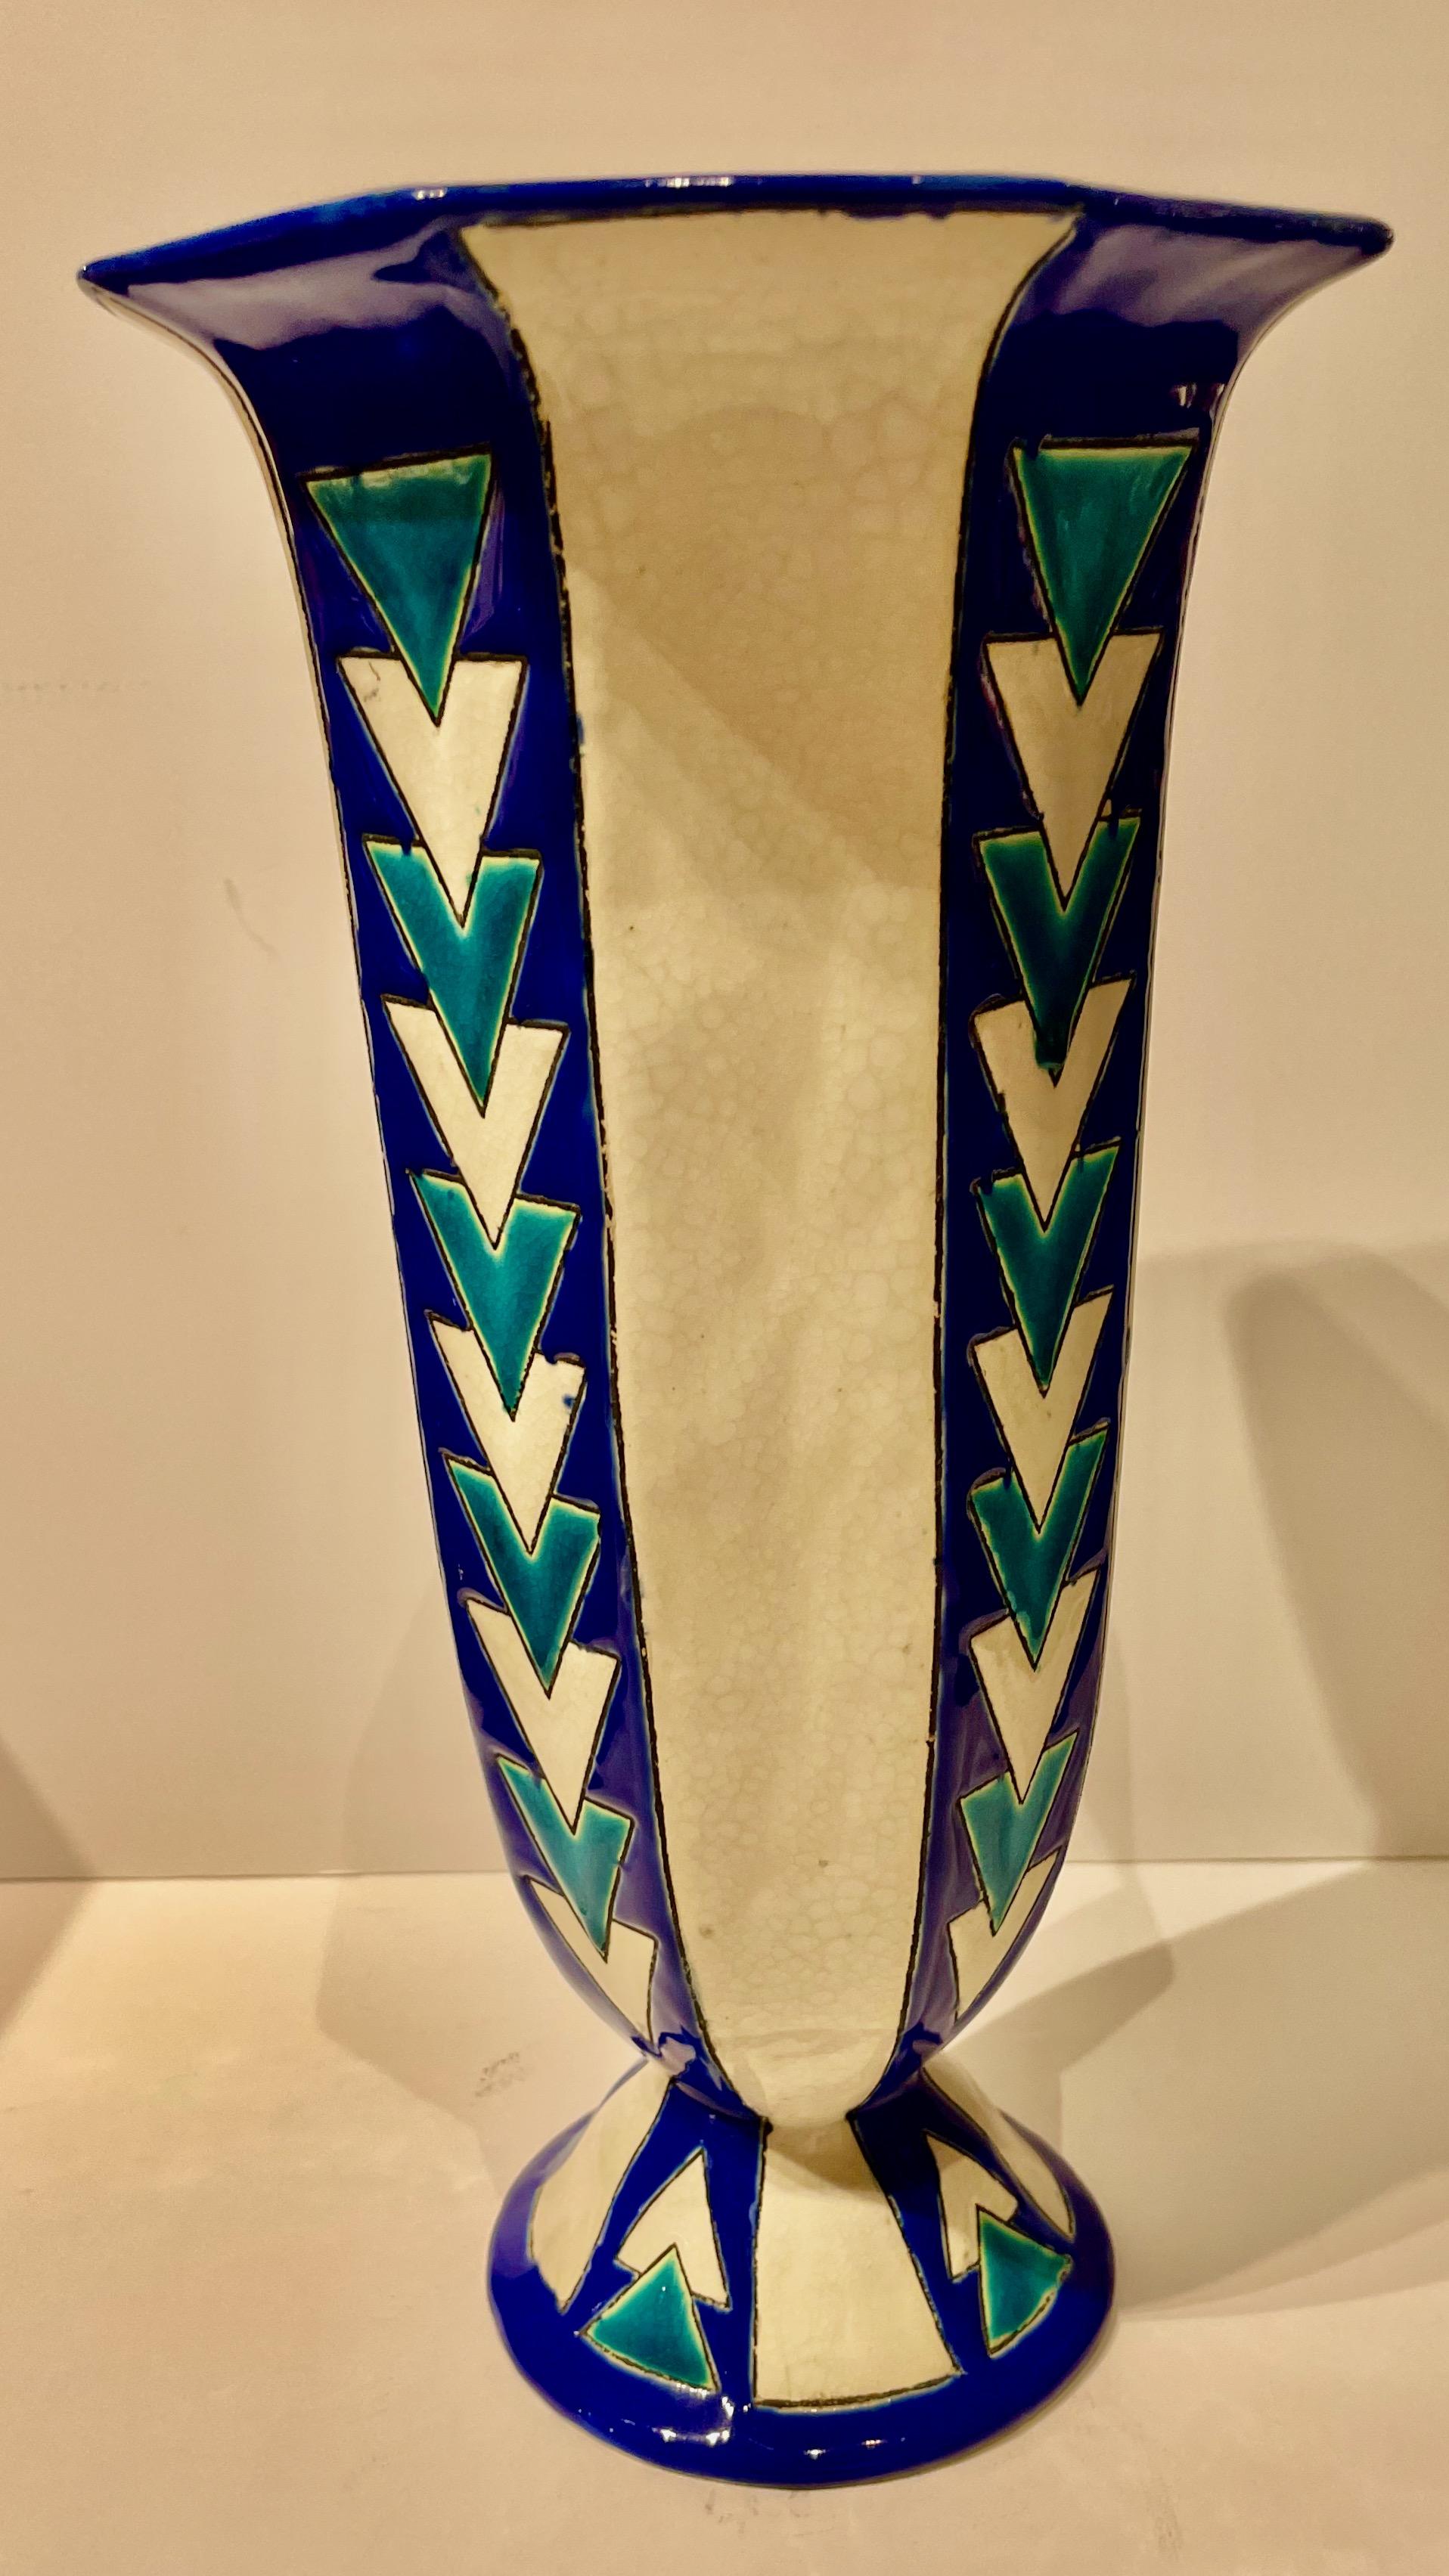 Un vase Art déco très stylisé du maître céramiste Charles Catteau de Boch Pottery. L'utilisation audacieuse de couleurs vives dans la technique connue sous le nom de cloisonné en céramique donne une forte impression à cette pièce de collection.